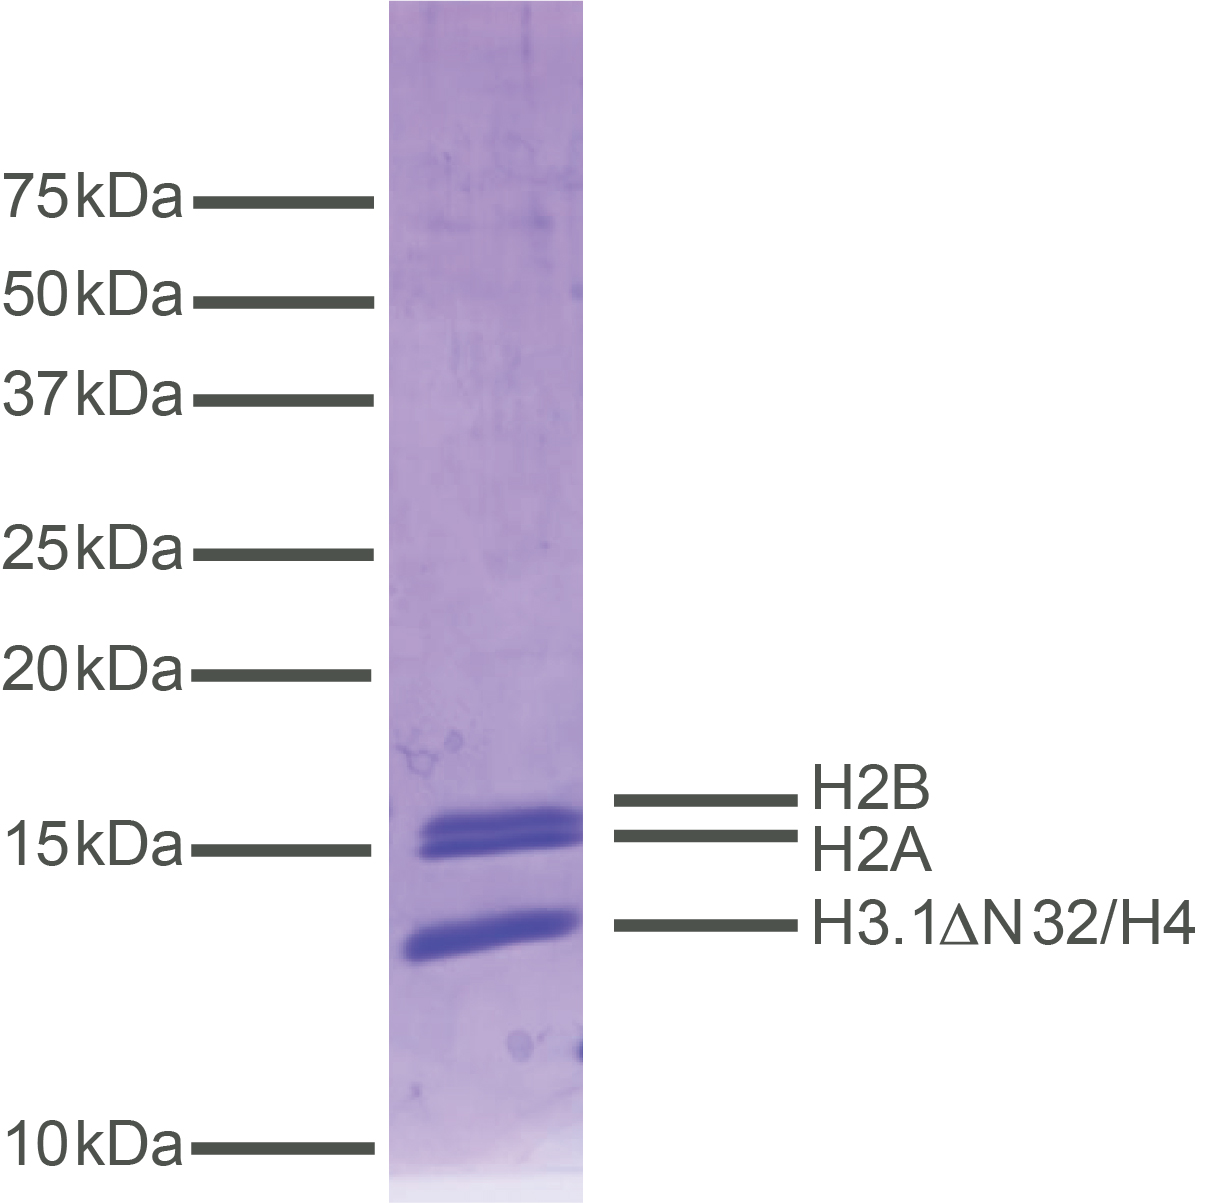 16-0016-protein-gel-data